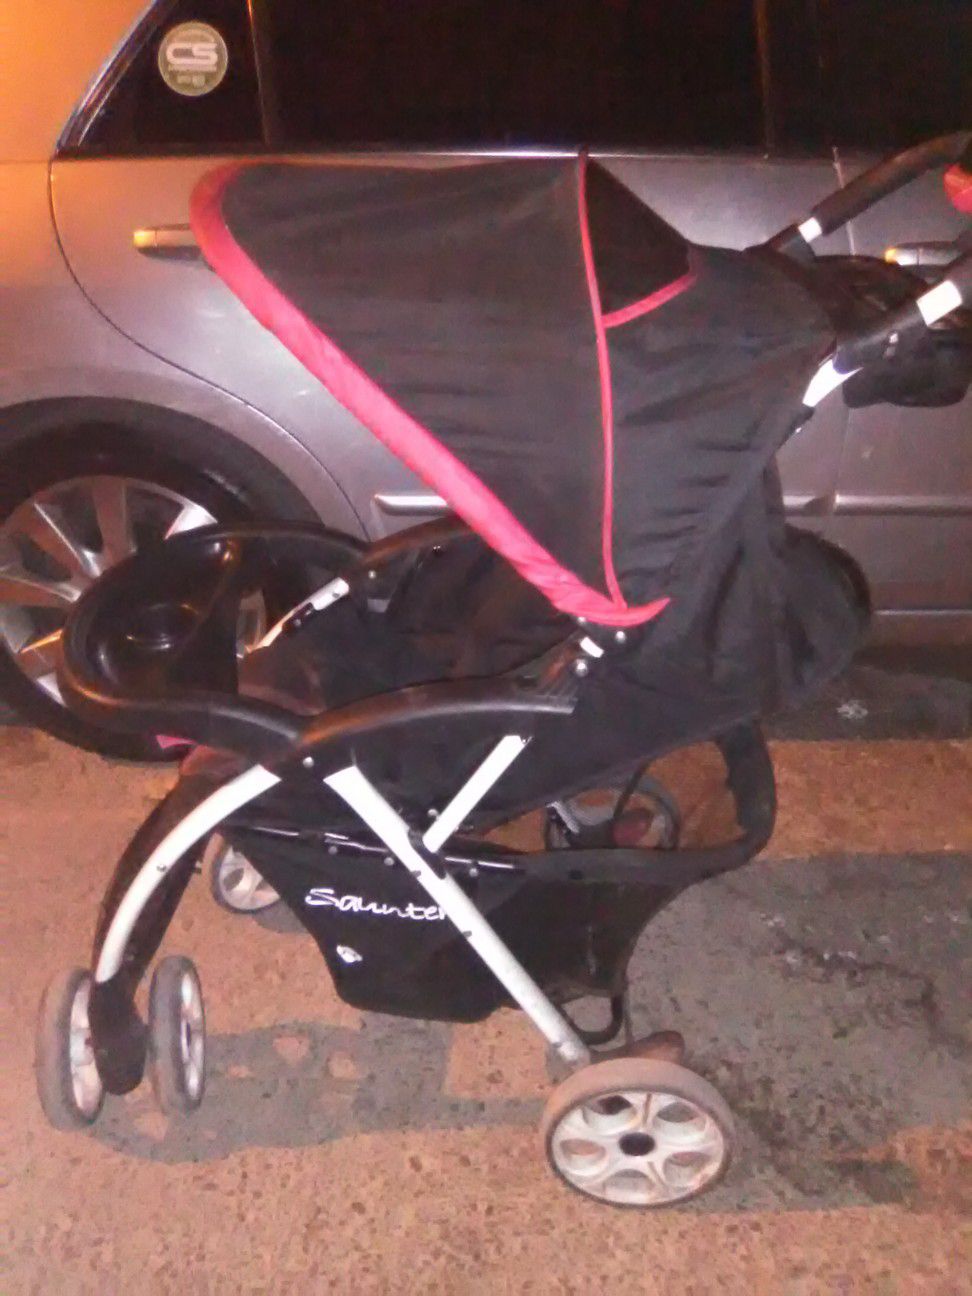 Baby 1st stroller